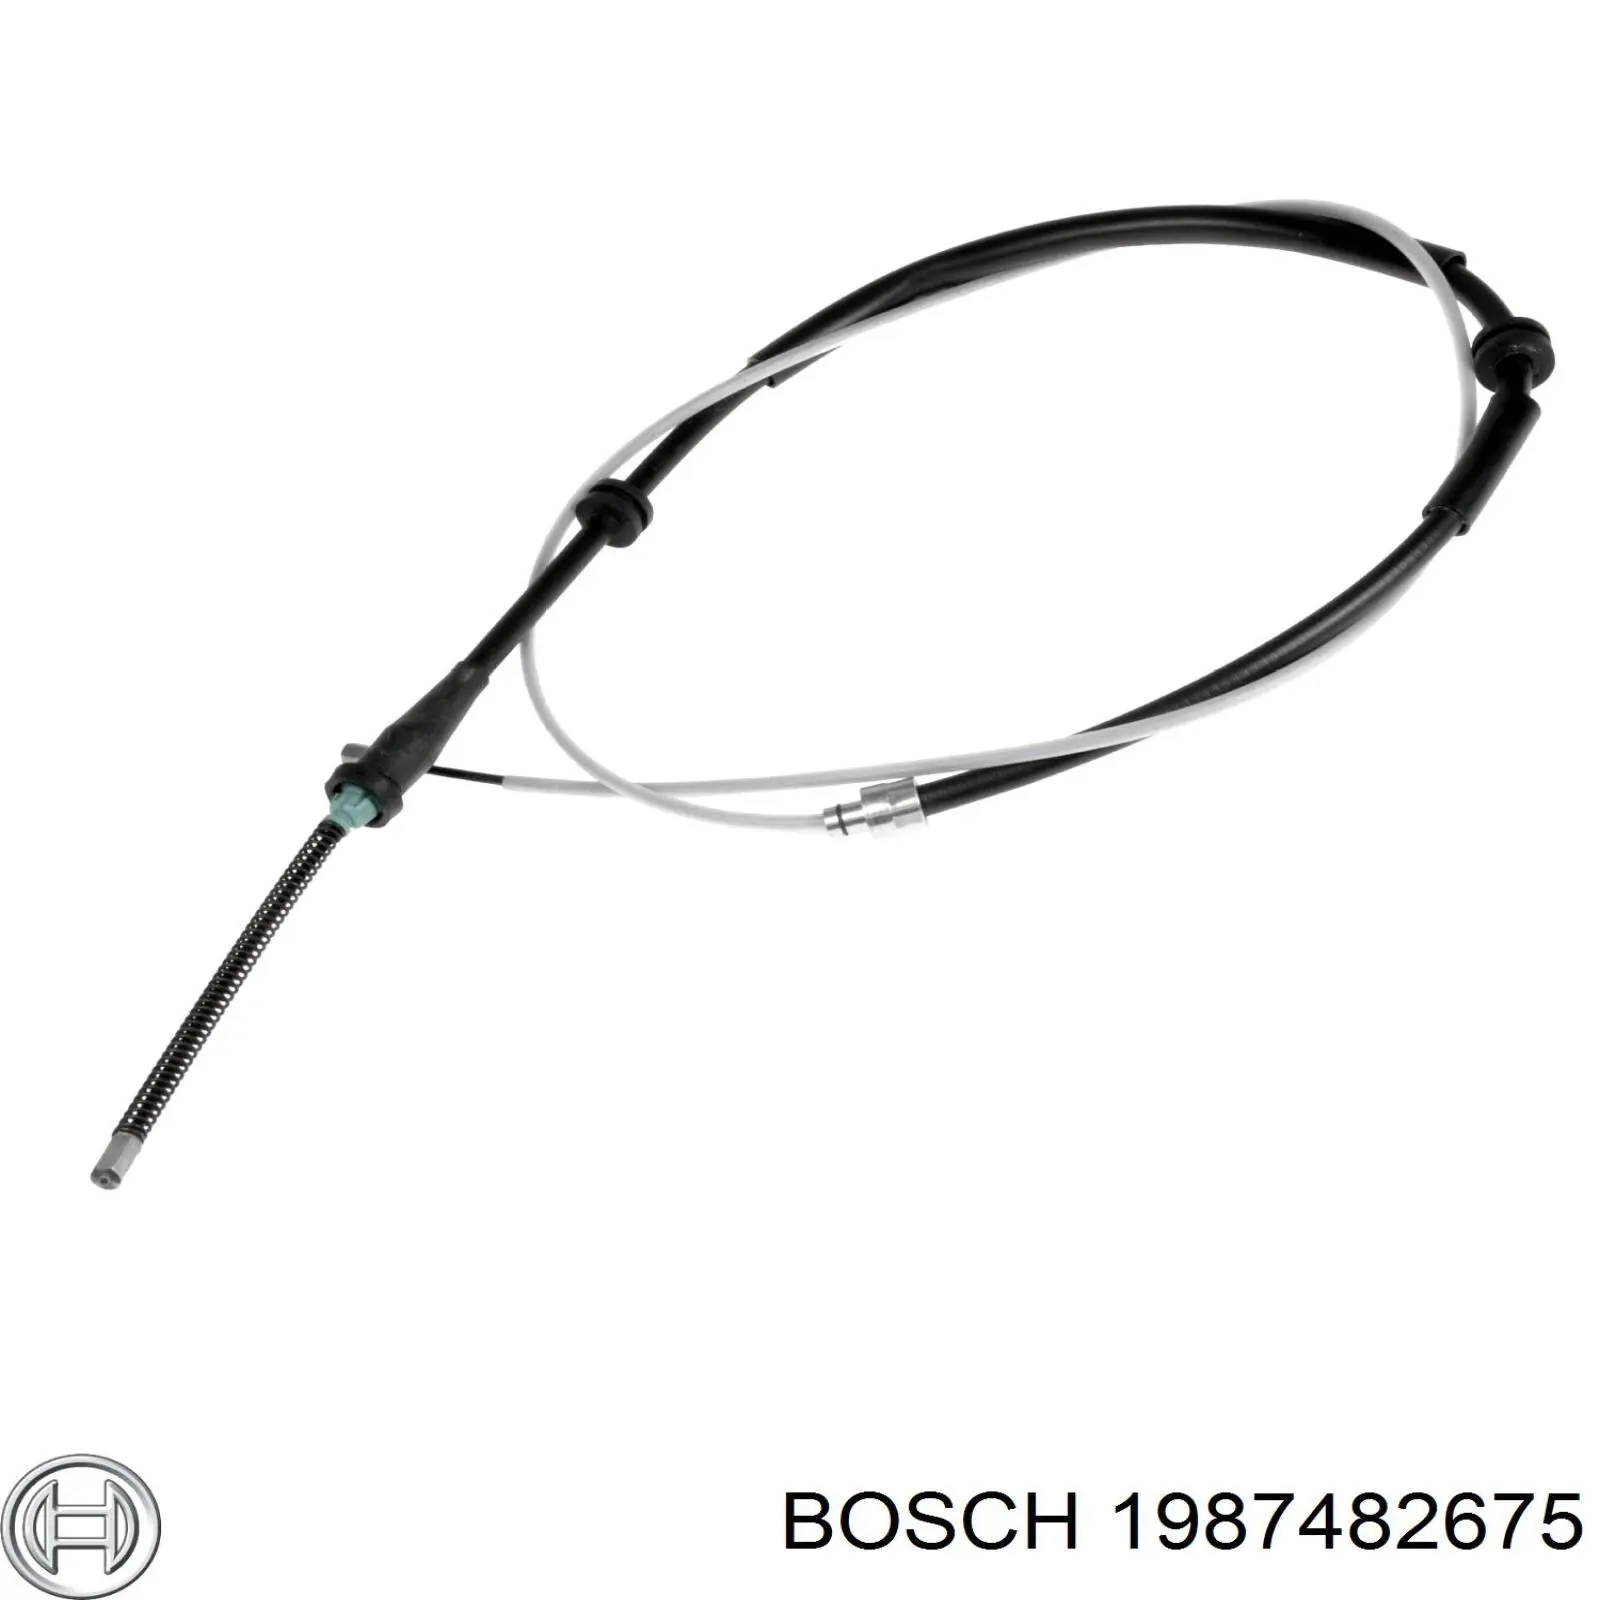 1987482675 Bosch cable de freno de mano trasero derecho/izquierdo